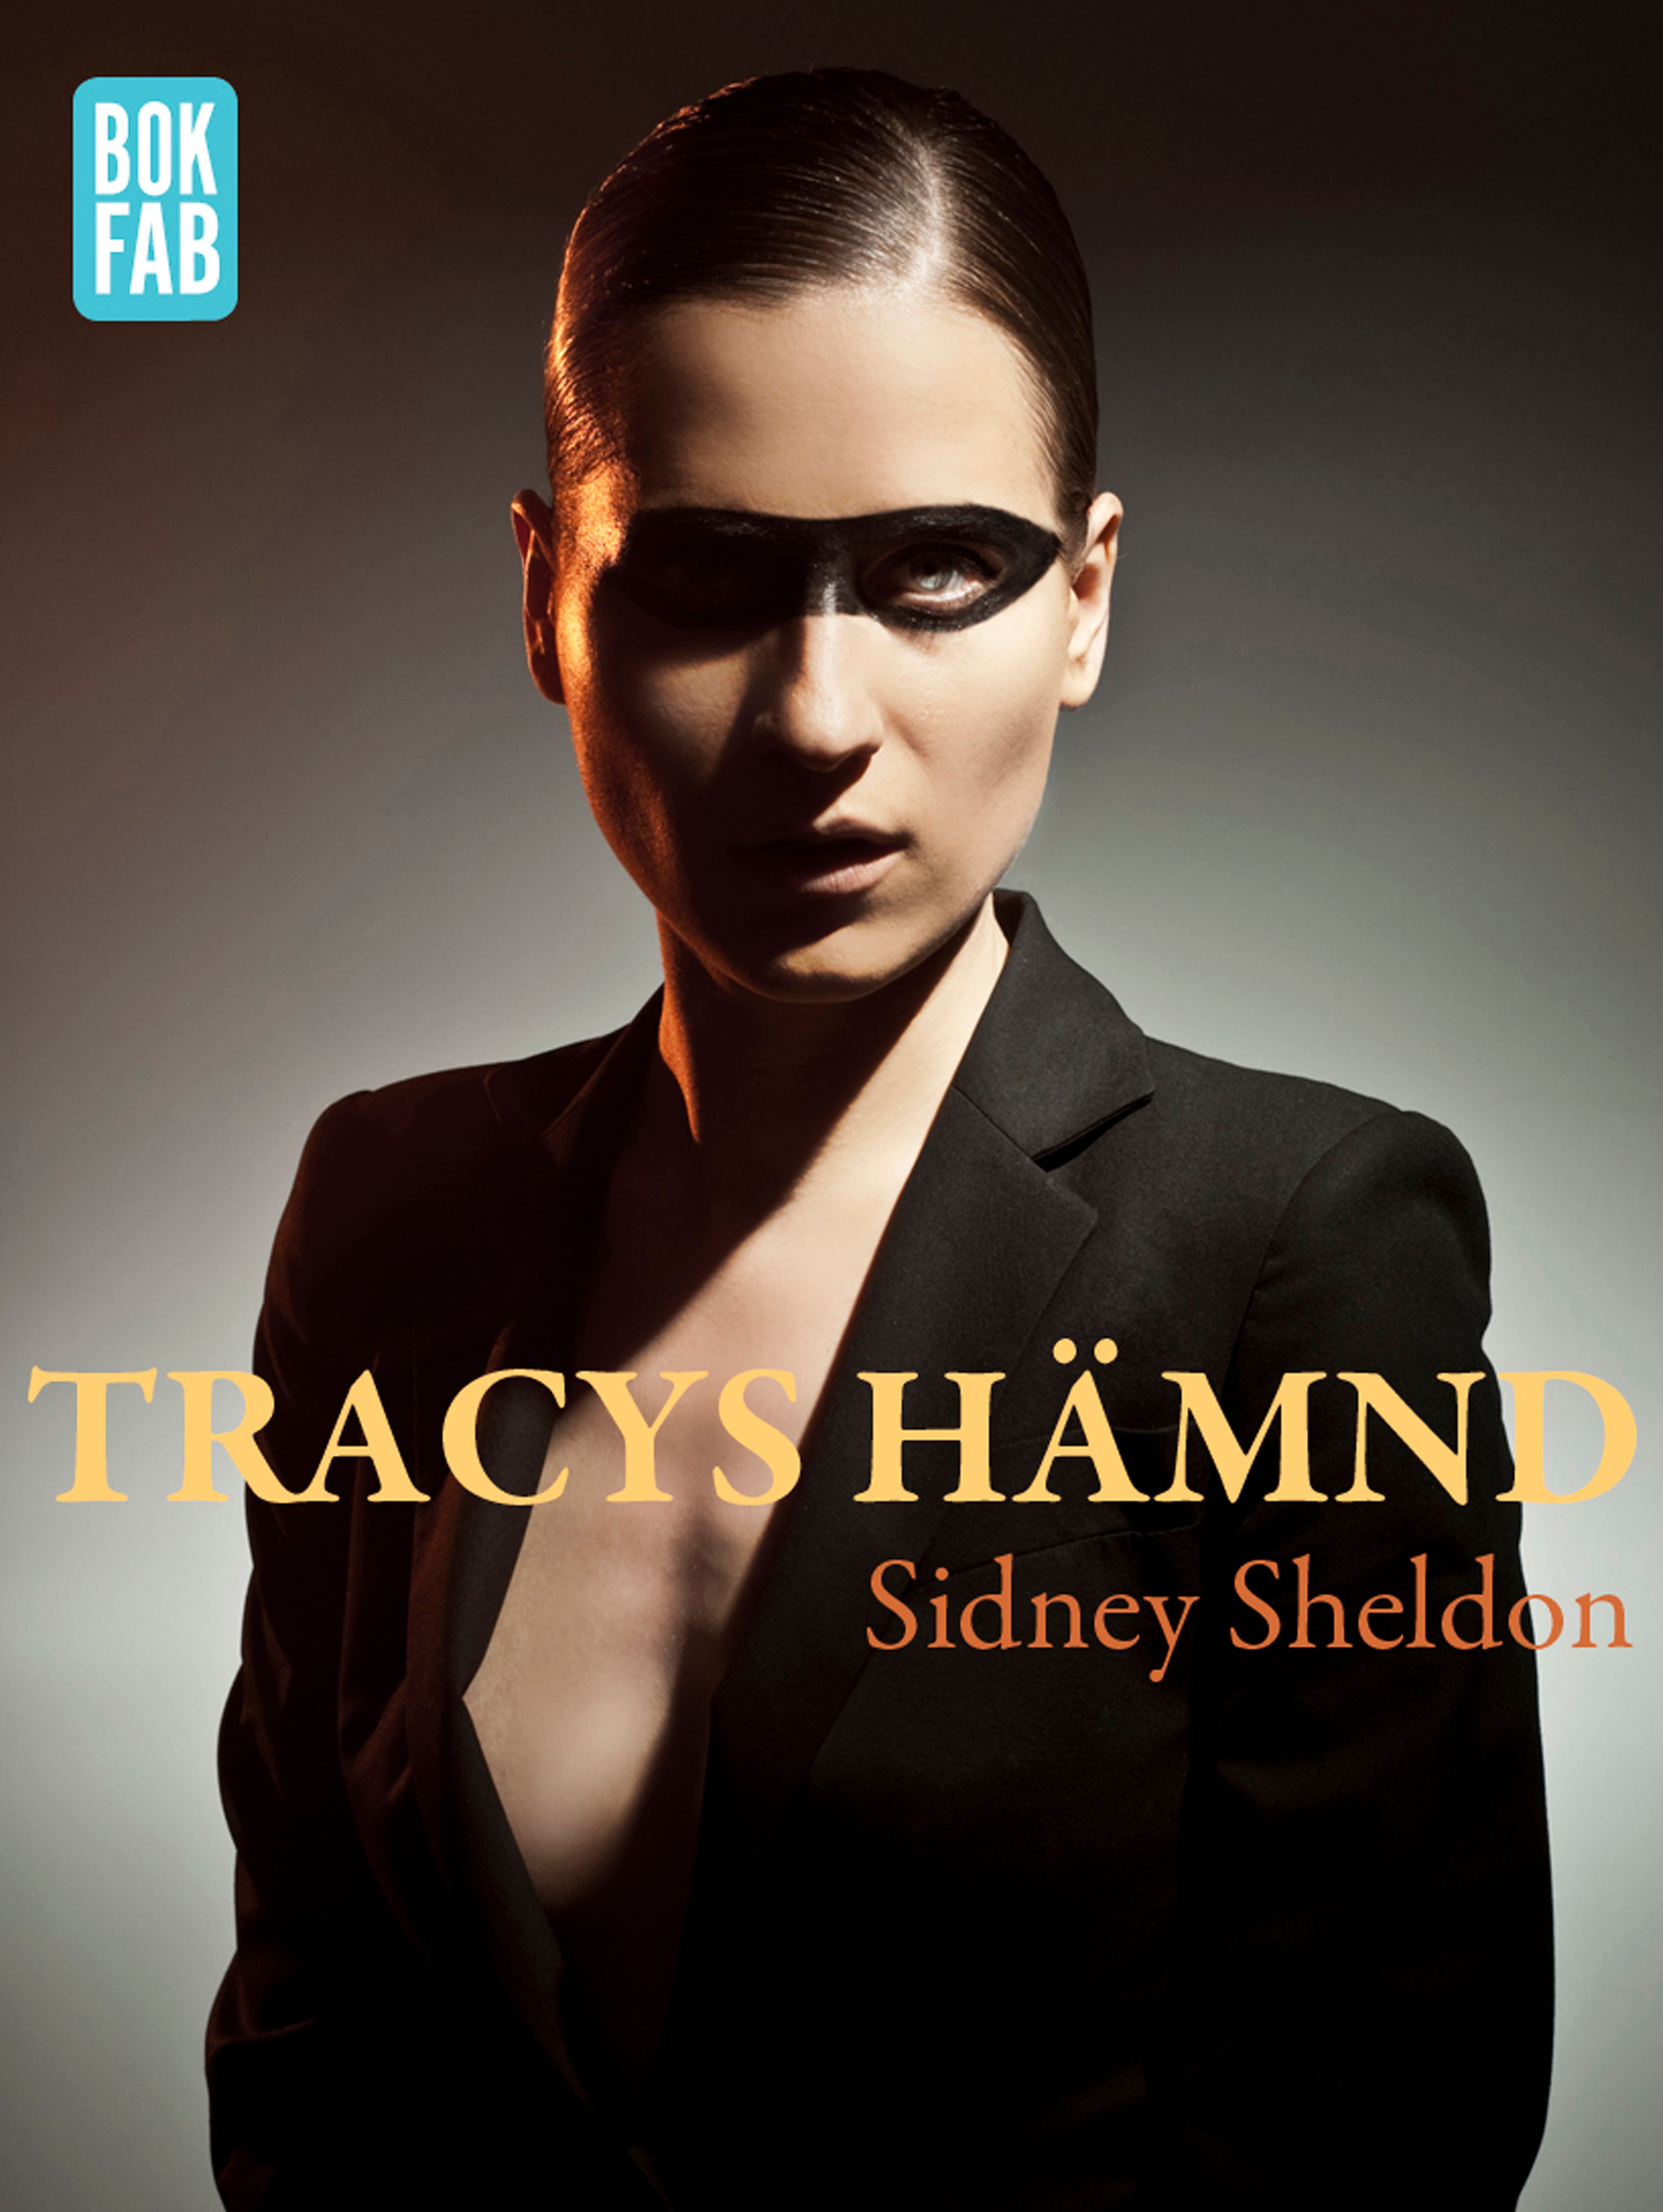 Tracys hämnd, e-bok av Sidney Sheldon